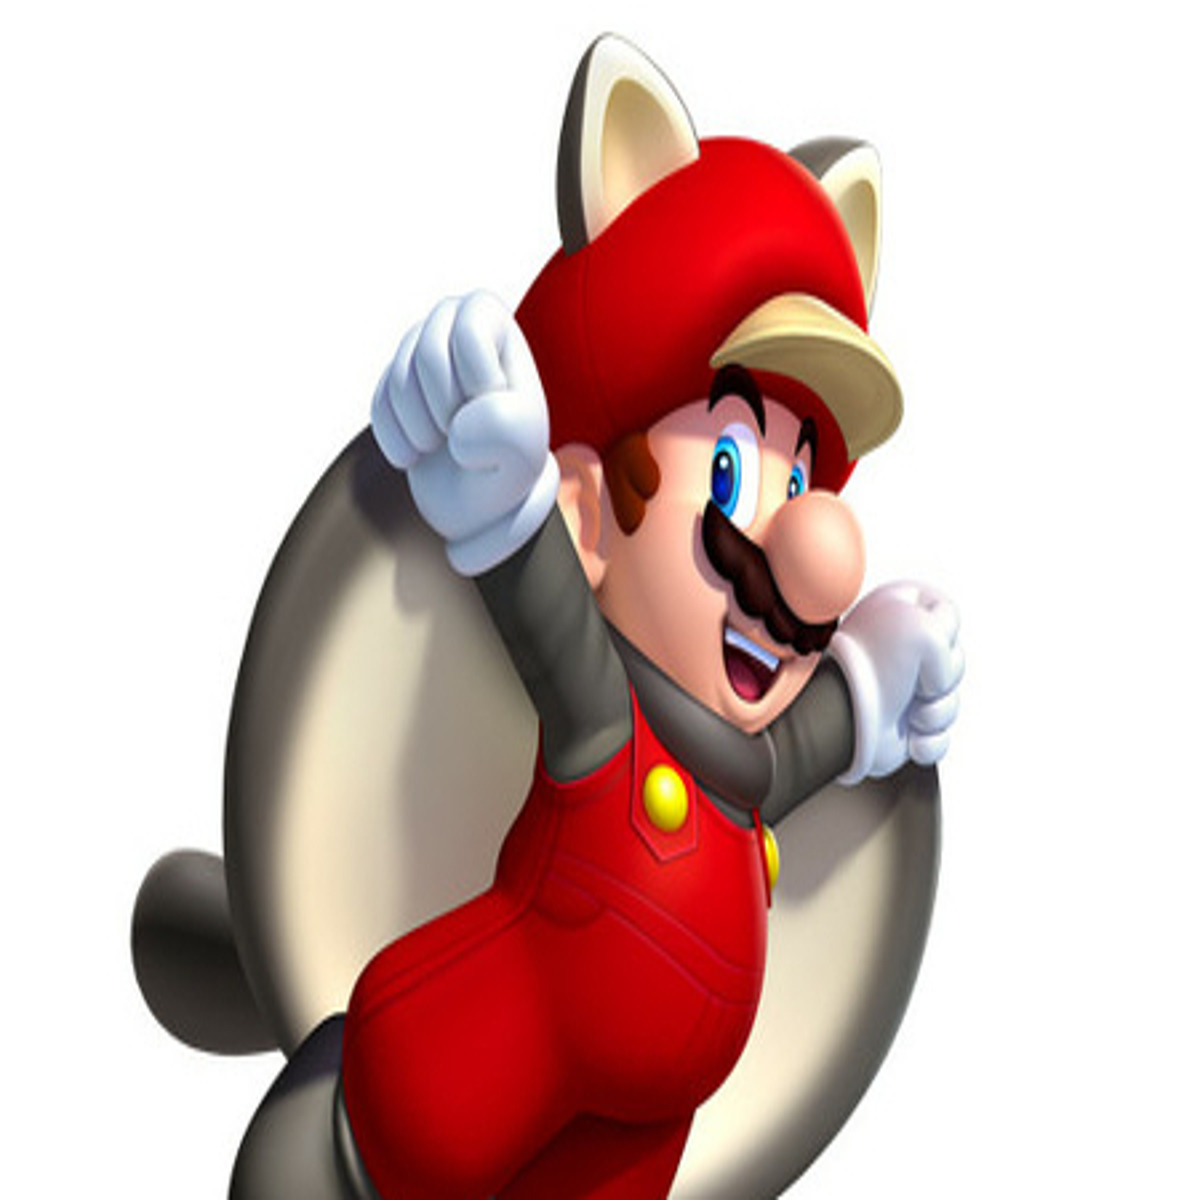 Novo jogo do Mario deve ser mostrado em próximos Nintendo